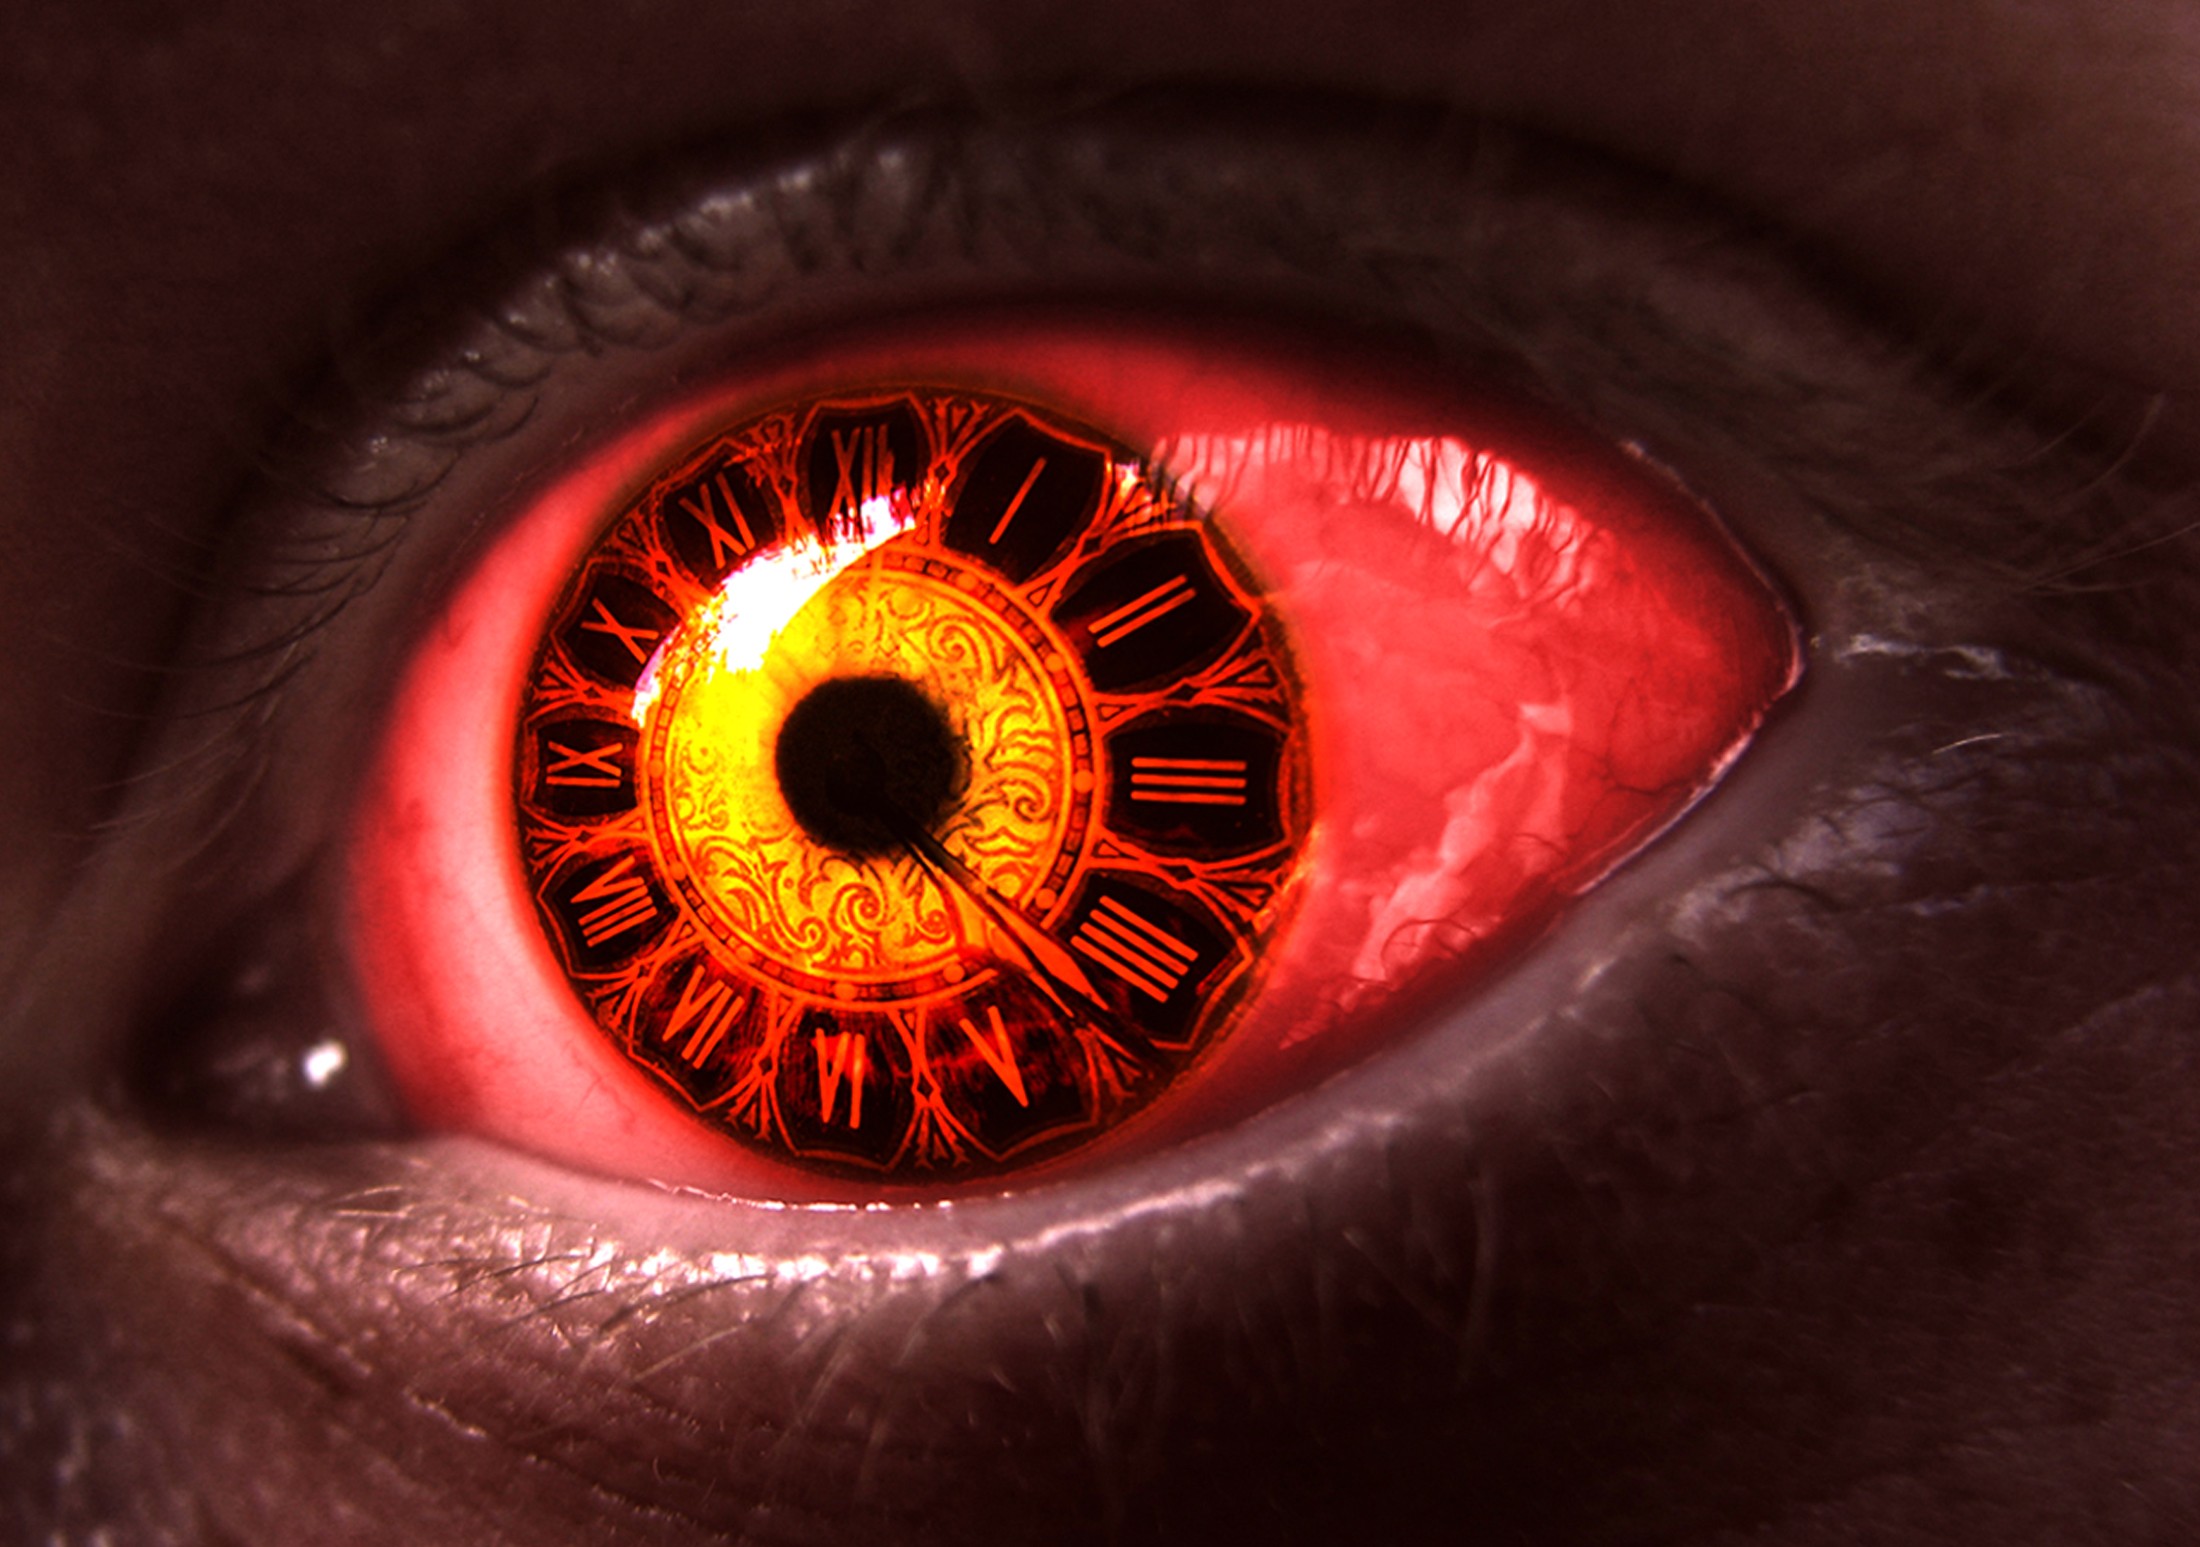 General 2200x1547 eyes clocks digital art creepy closeup